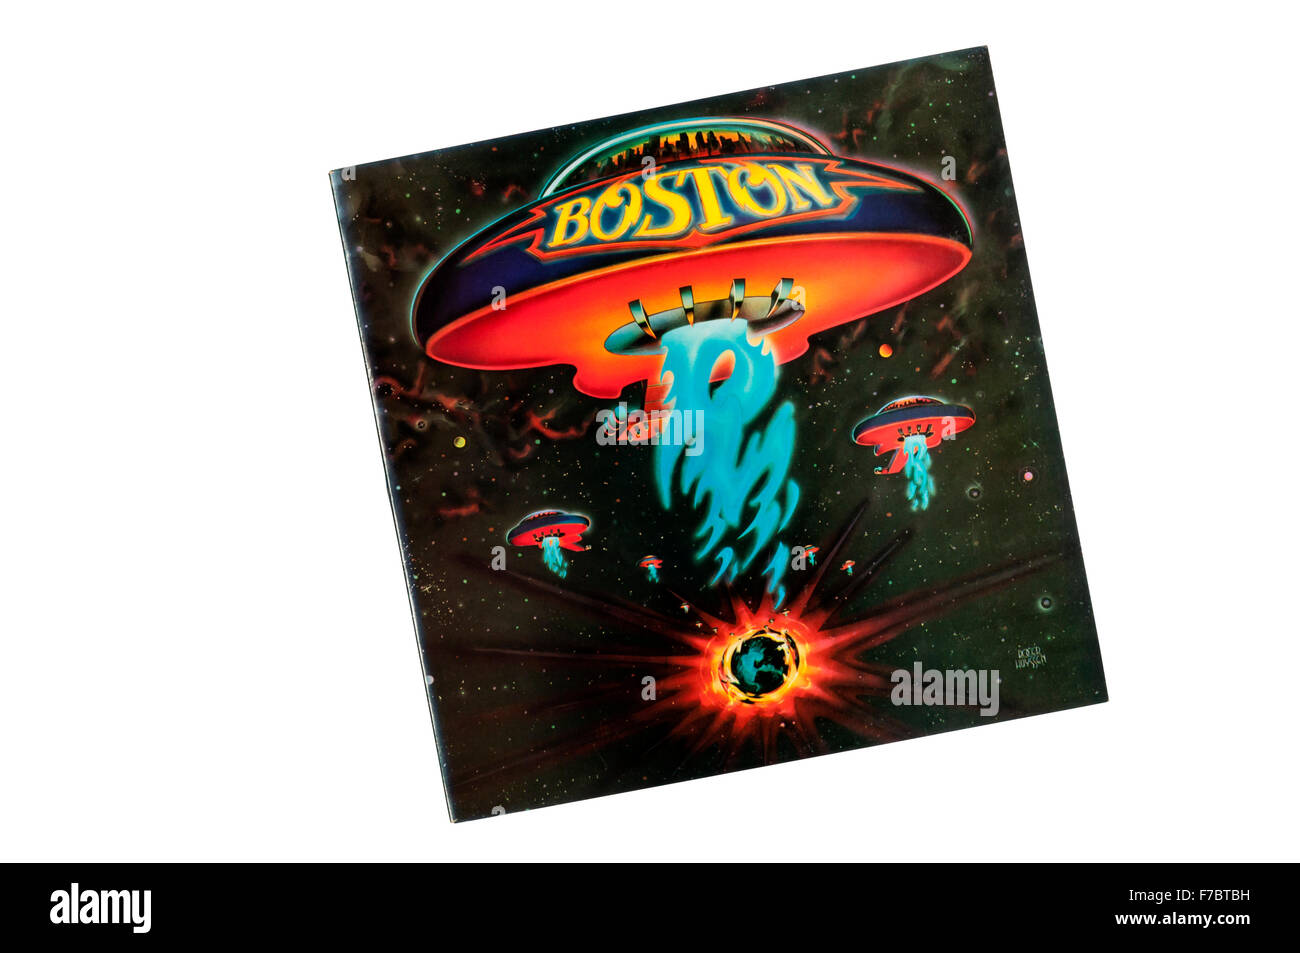 Boston ist das gleichnamige Debütalbum der Boston ansässige amerikanische Rockband Boston. Es wurde 1976 veröffentlicht. Stockfoto